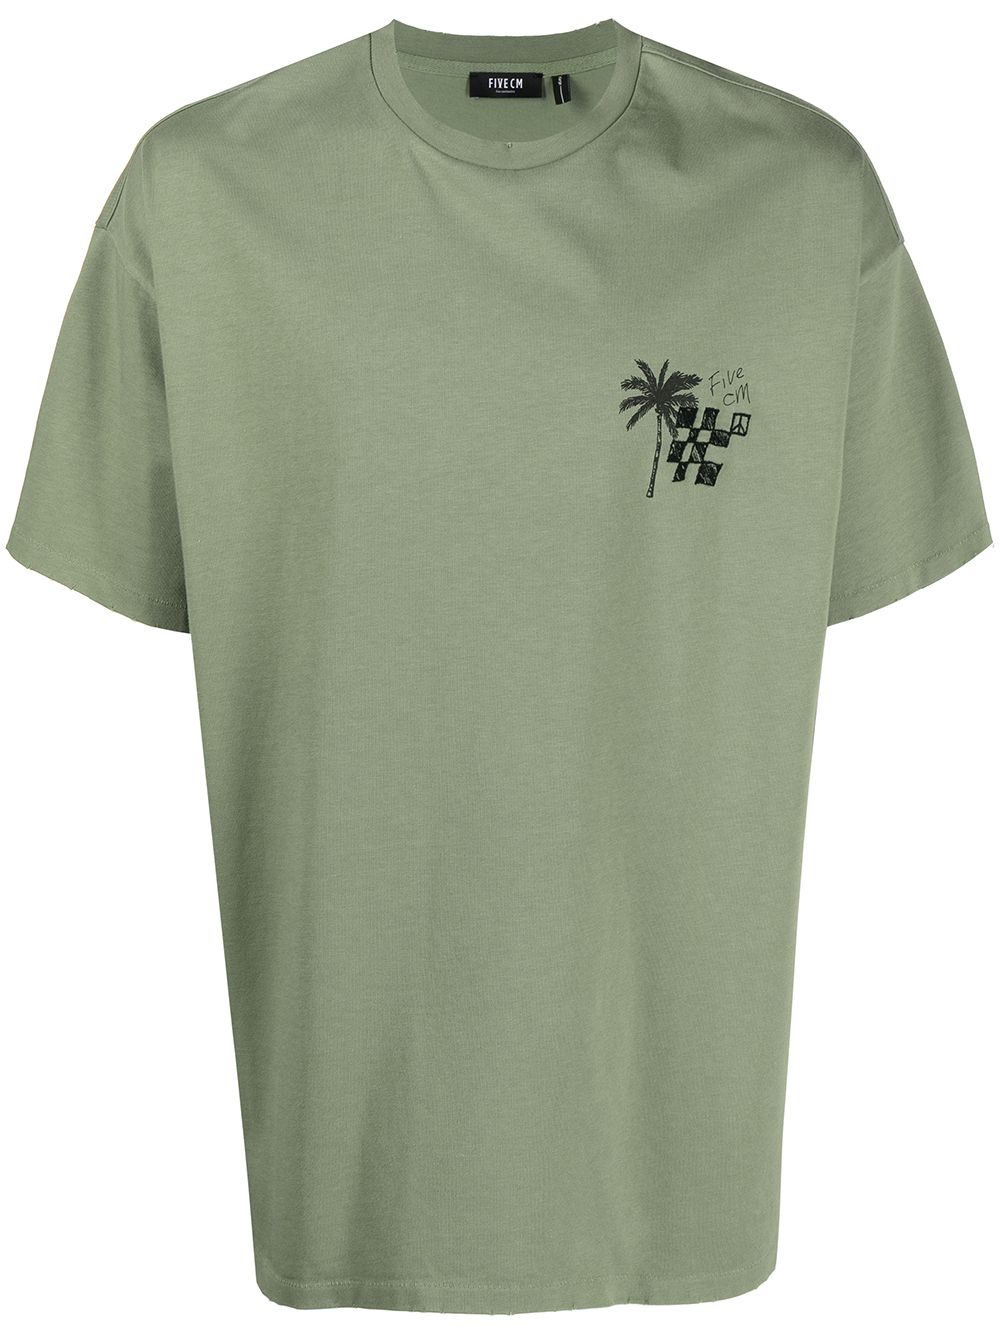 FIVE CM Surf Culture T-Shirt - Grün von FIVE CM